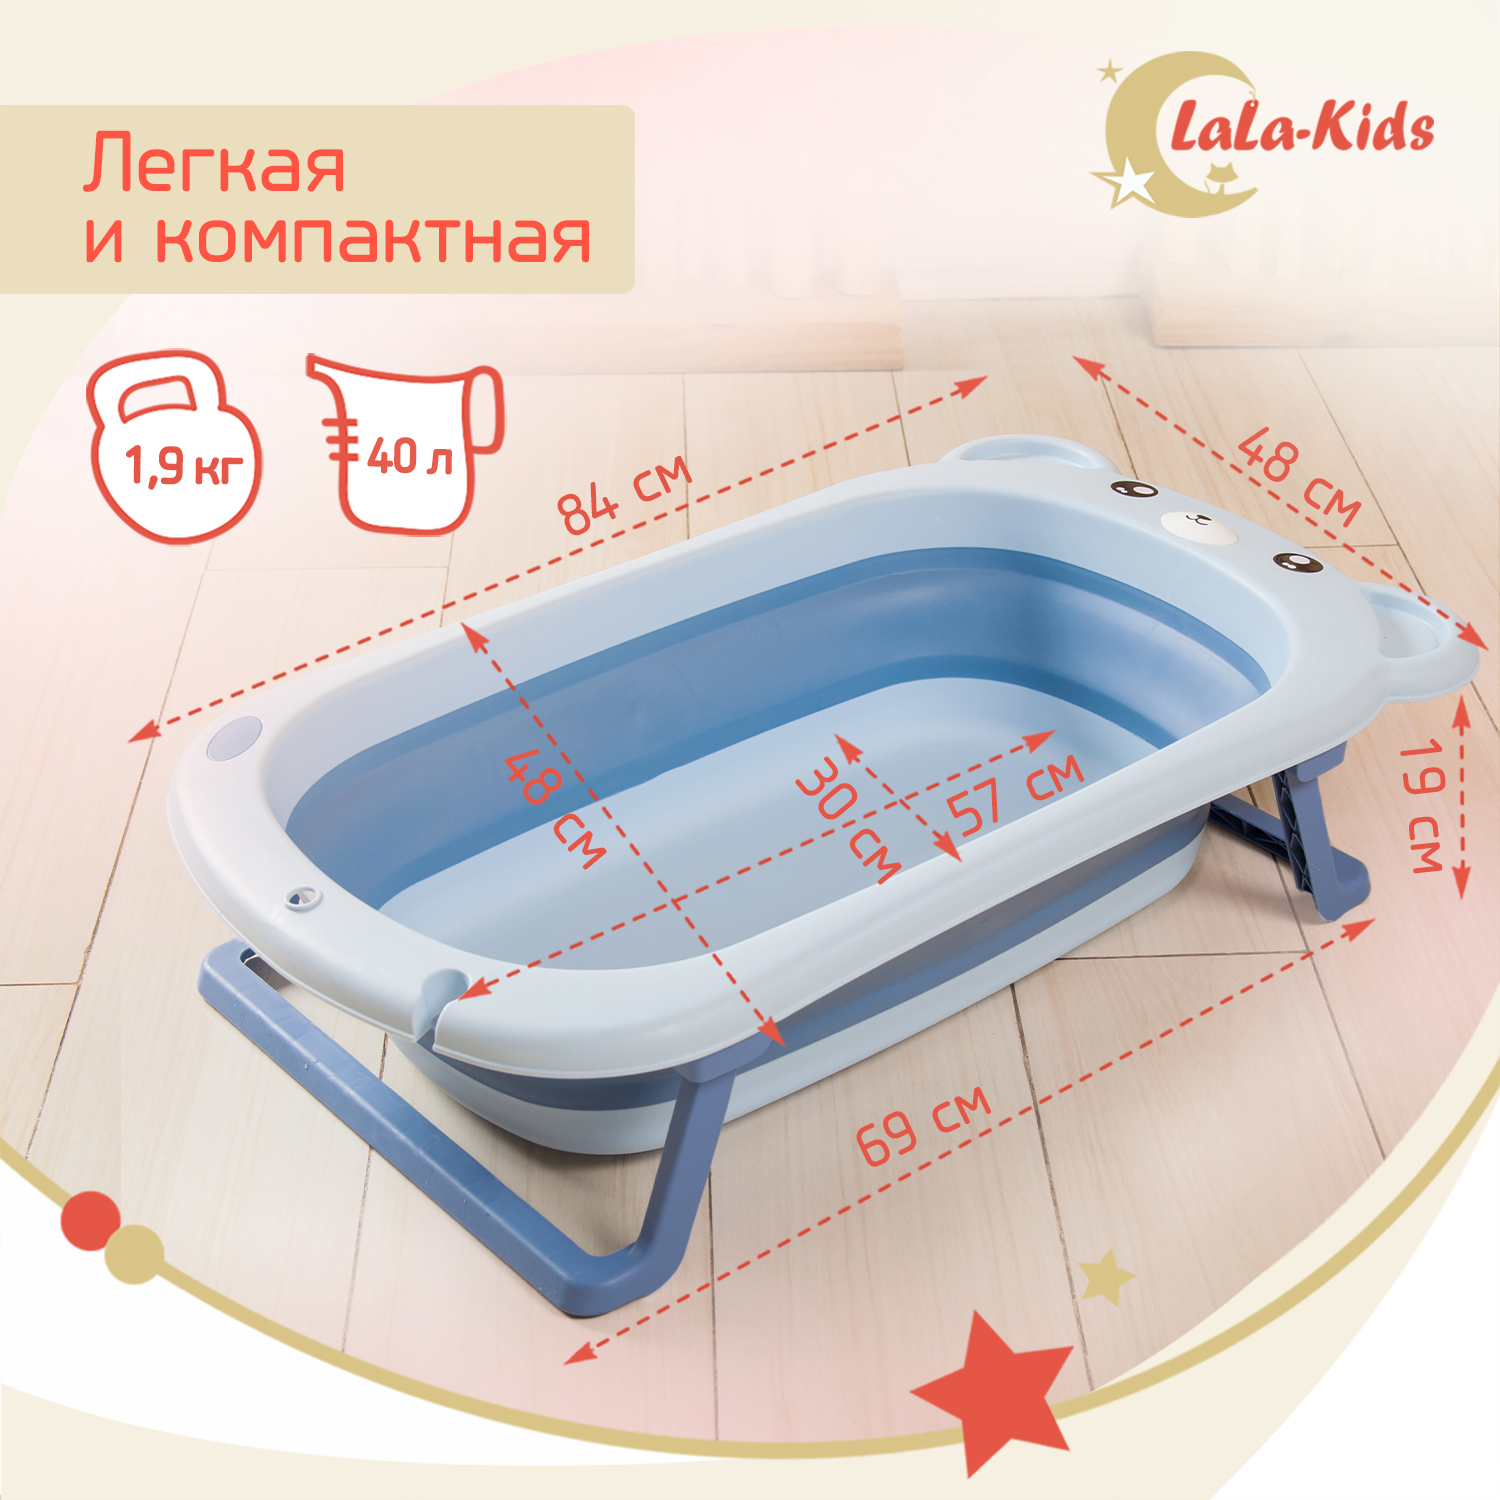 Детская ванночка LaLa-Kids складная с матрасиком для купания новорожденных - фото 6